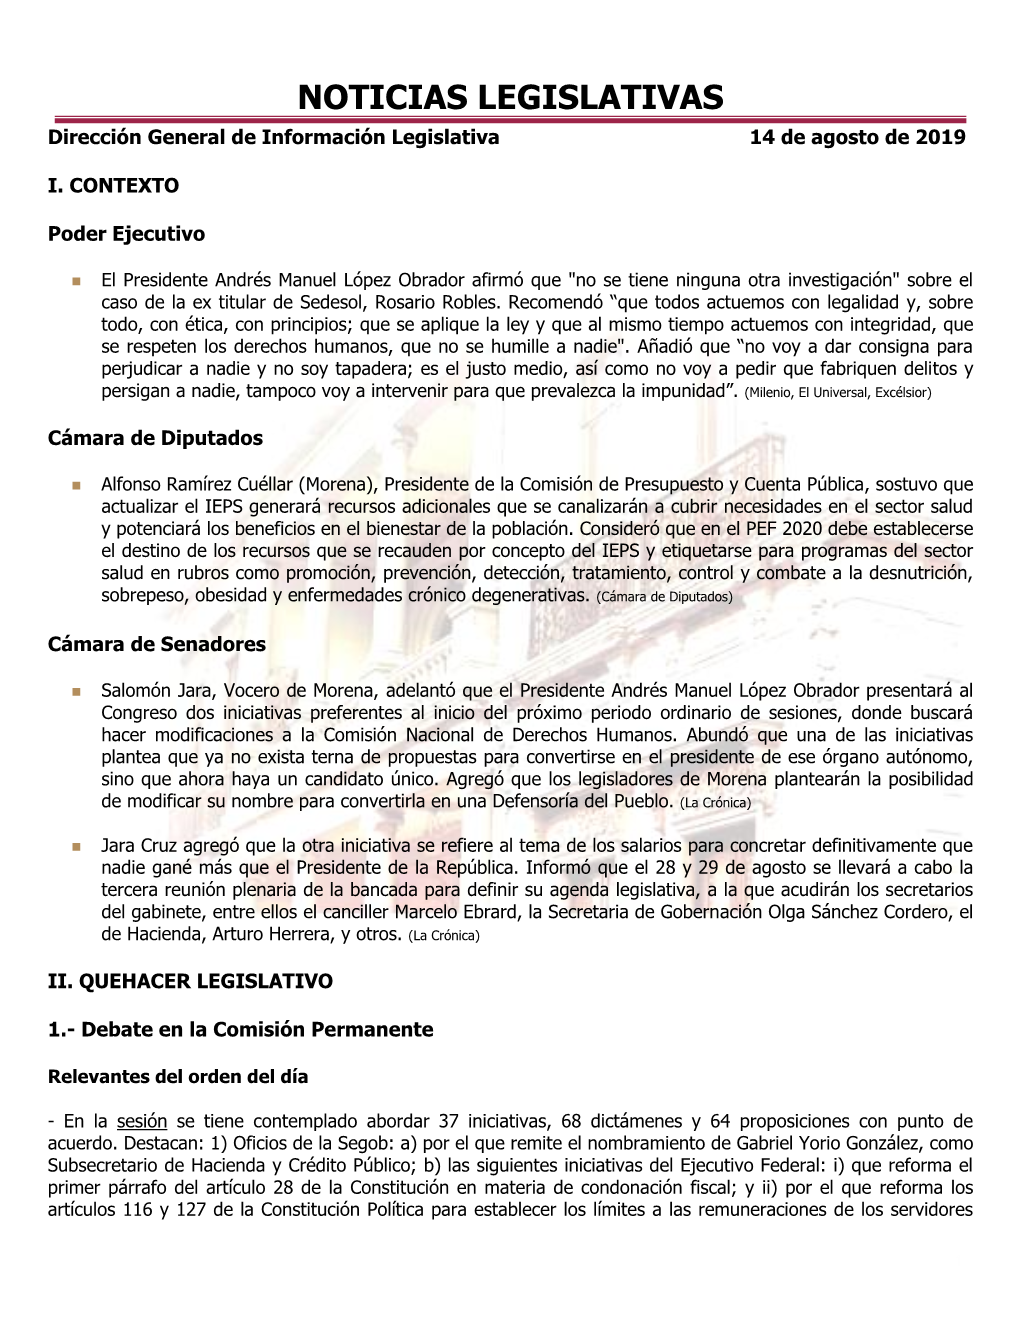 NOTICIAS LEGISLATIVAS Dirección General De Información Legislativa 14 De Agosto De 2019